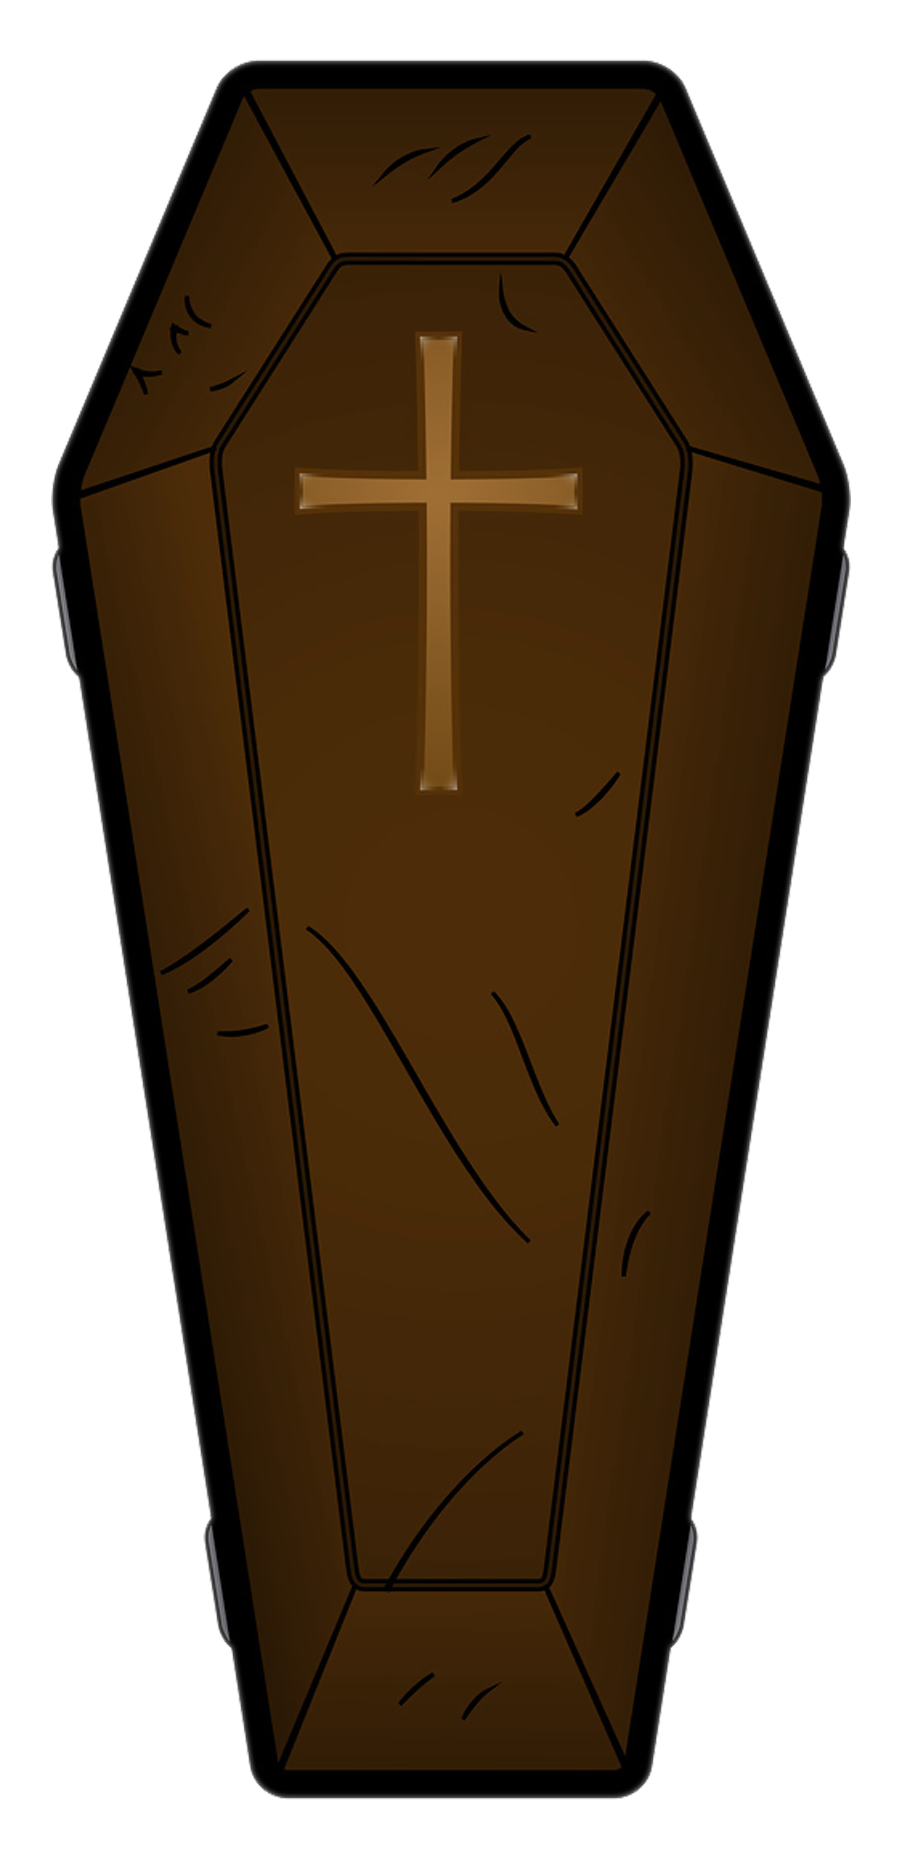 Coffin Blackout Clip Art